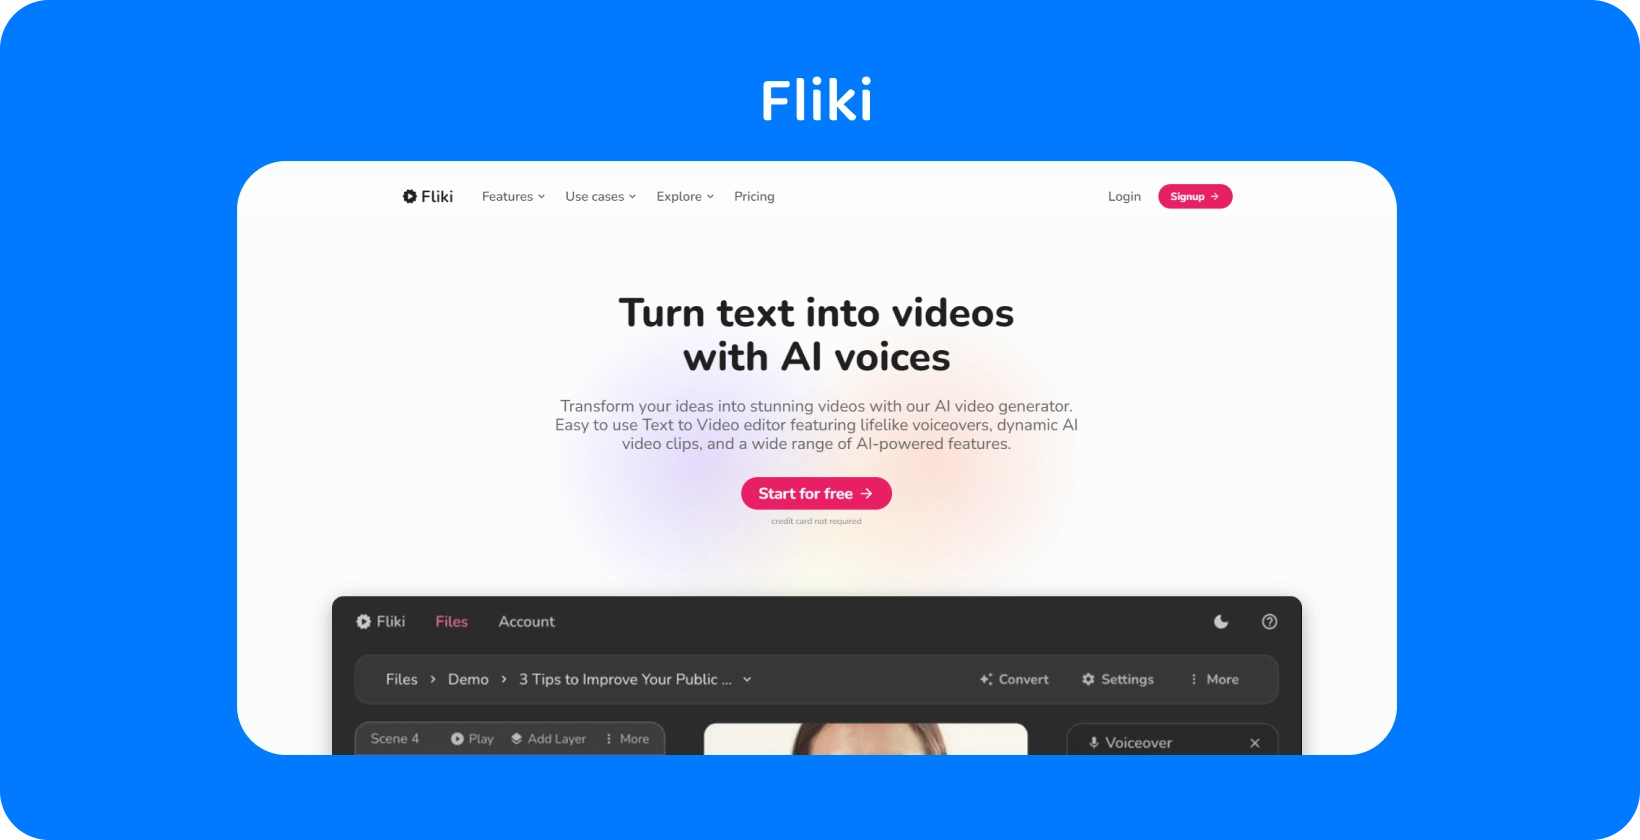 La pagina della piattaforma di Fliki mostra come trasformare il testo in video con voci AI, offrendo un'esperienza di editing text-to-video.